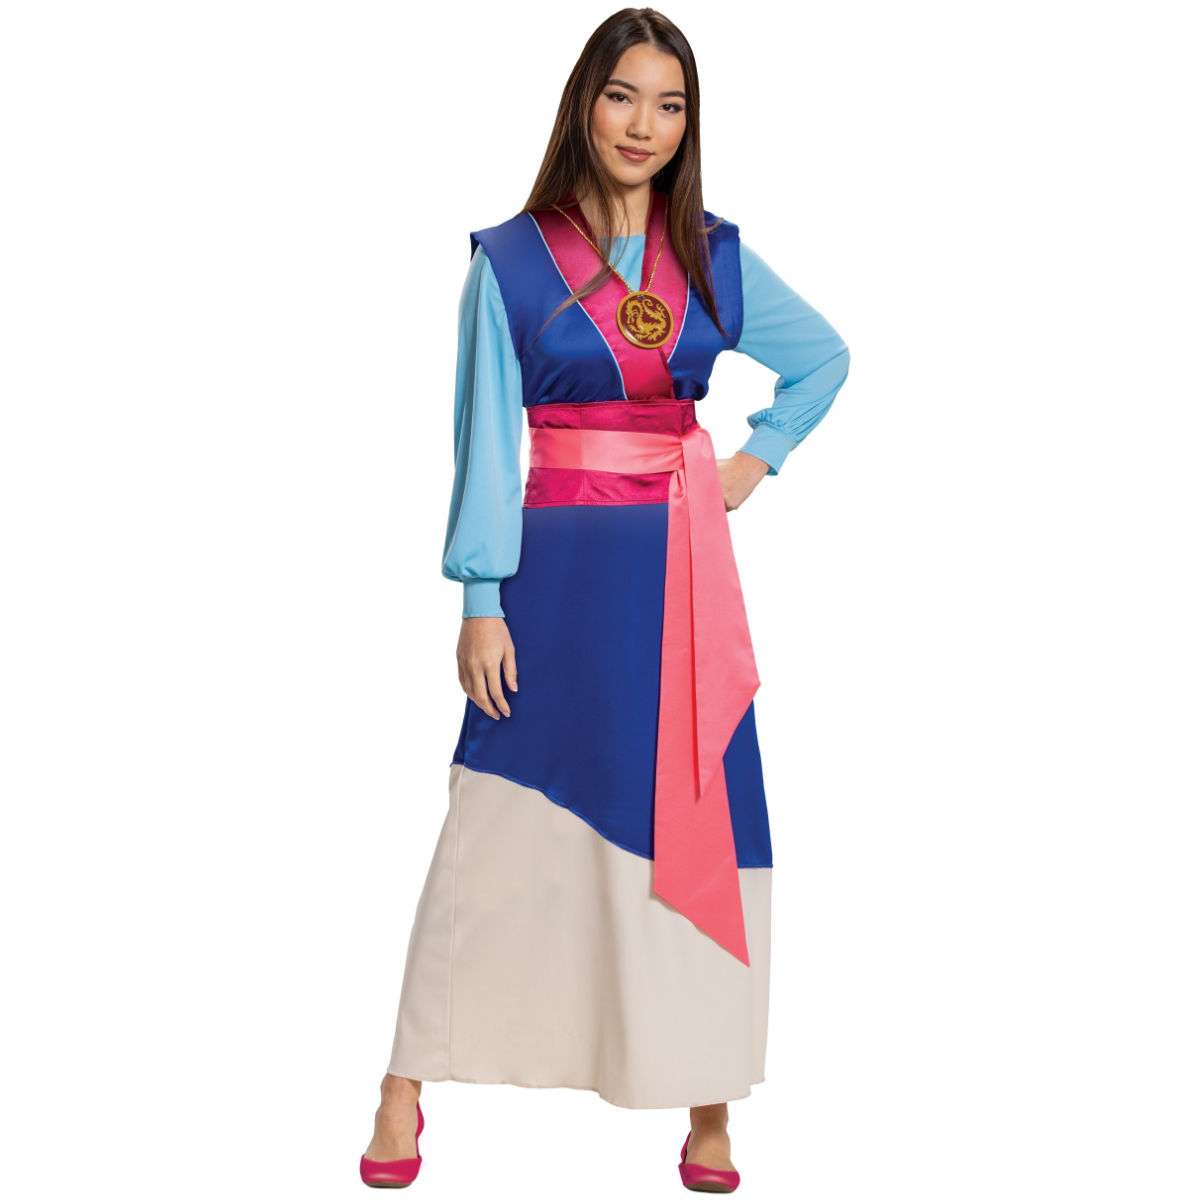 Mulan Blue Dress Women's Halloween Costume